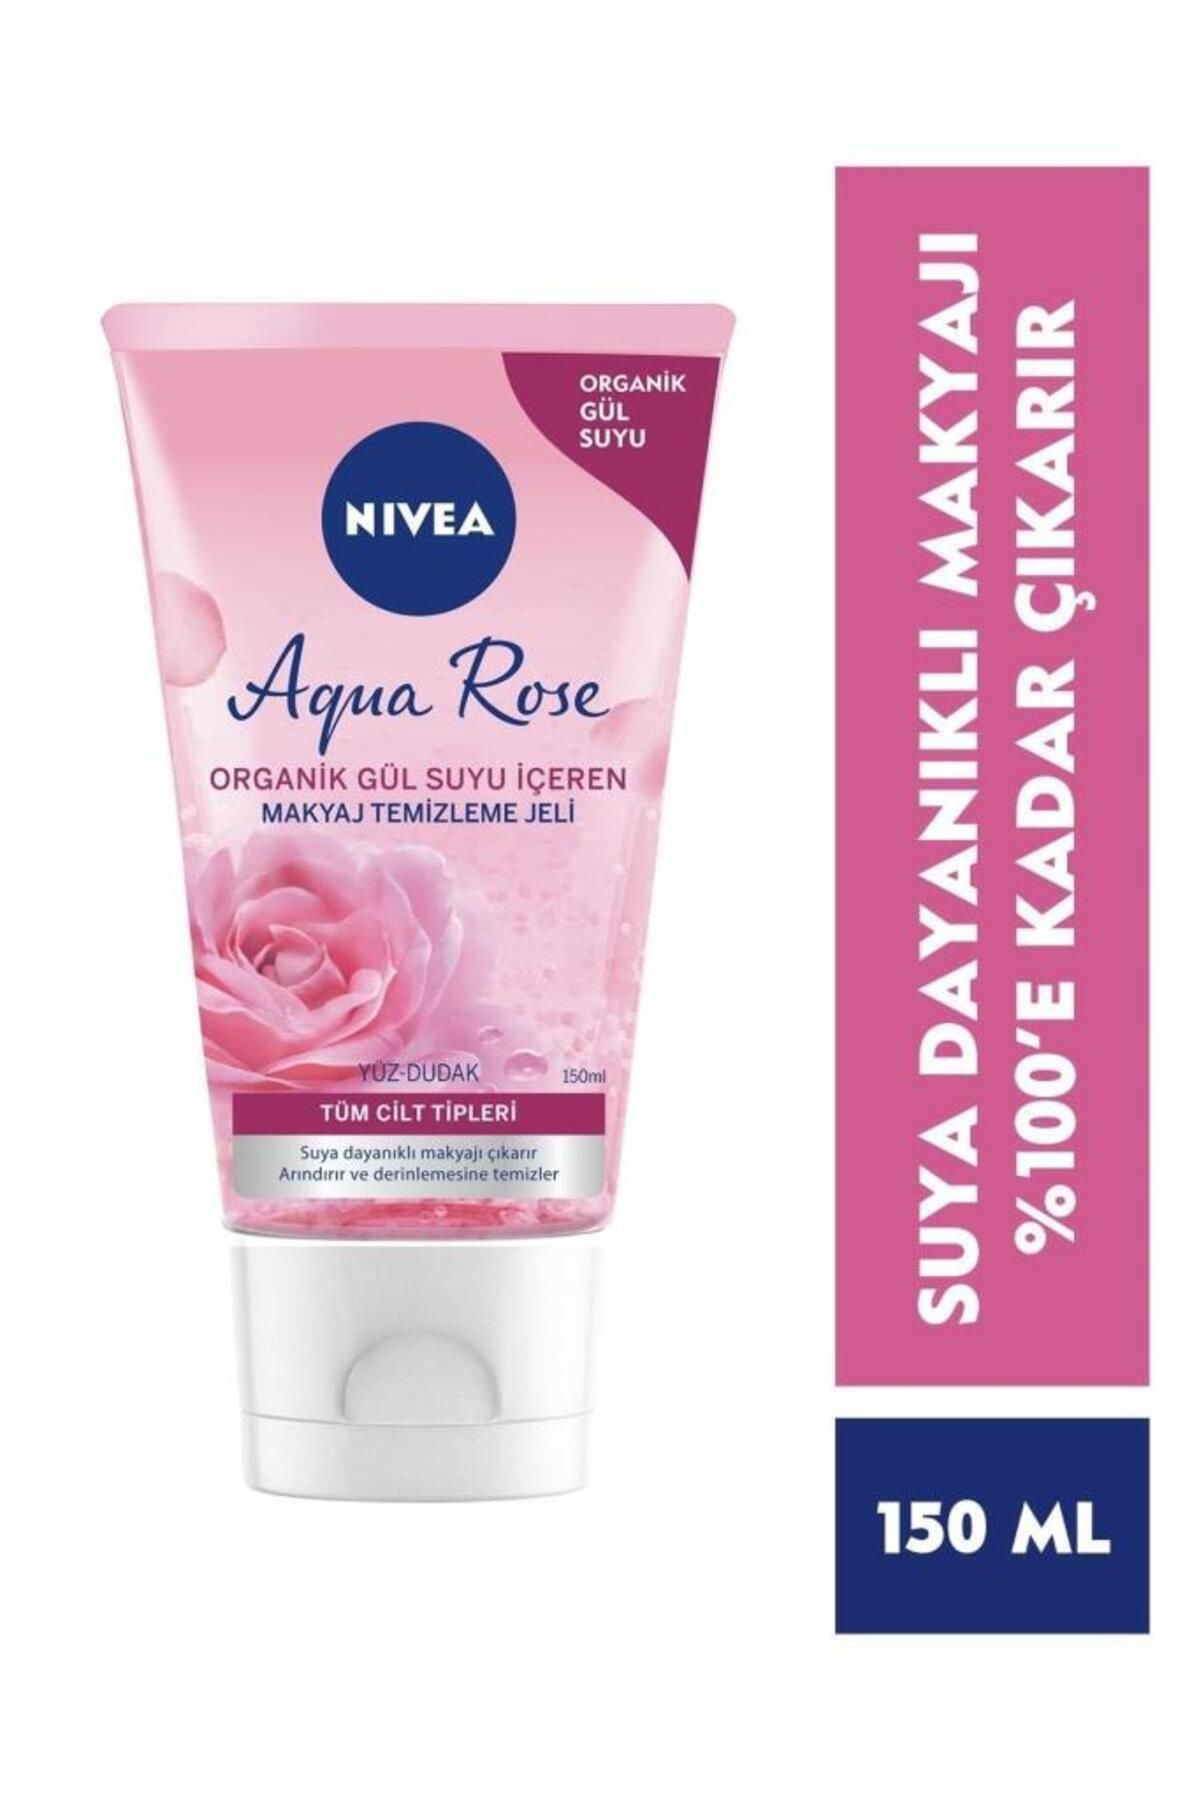 NIVEA Aqua Rose Organik Gül Suyu Içeren Makyaj Temizleme Jeli 150ml, Suya Dayanıklı Makyajı Çıkarır